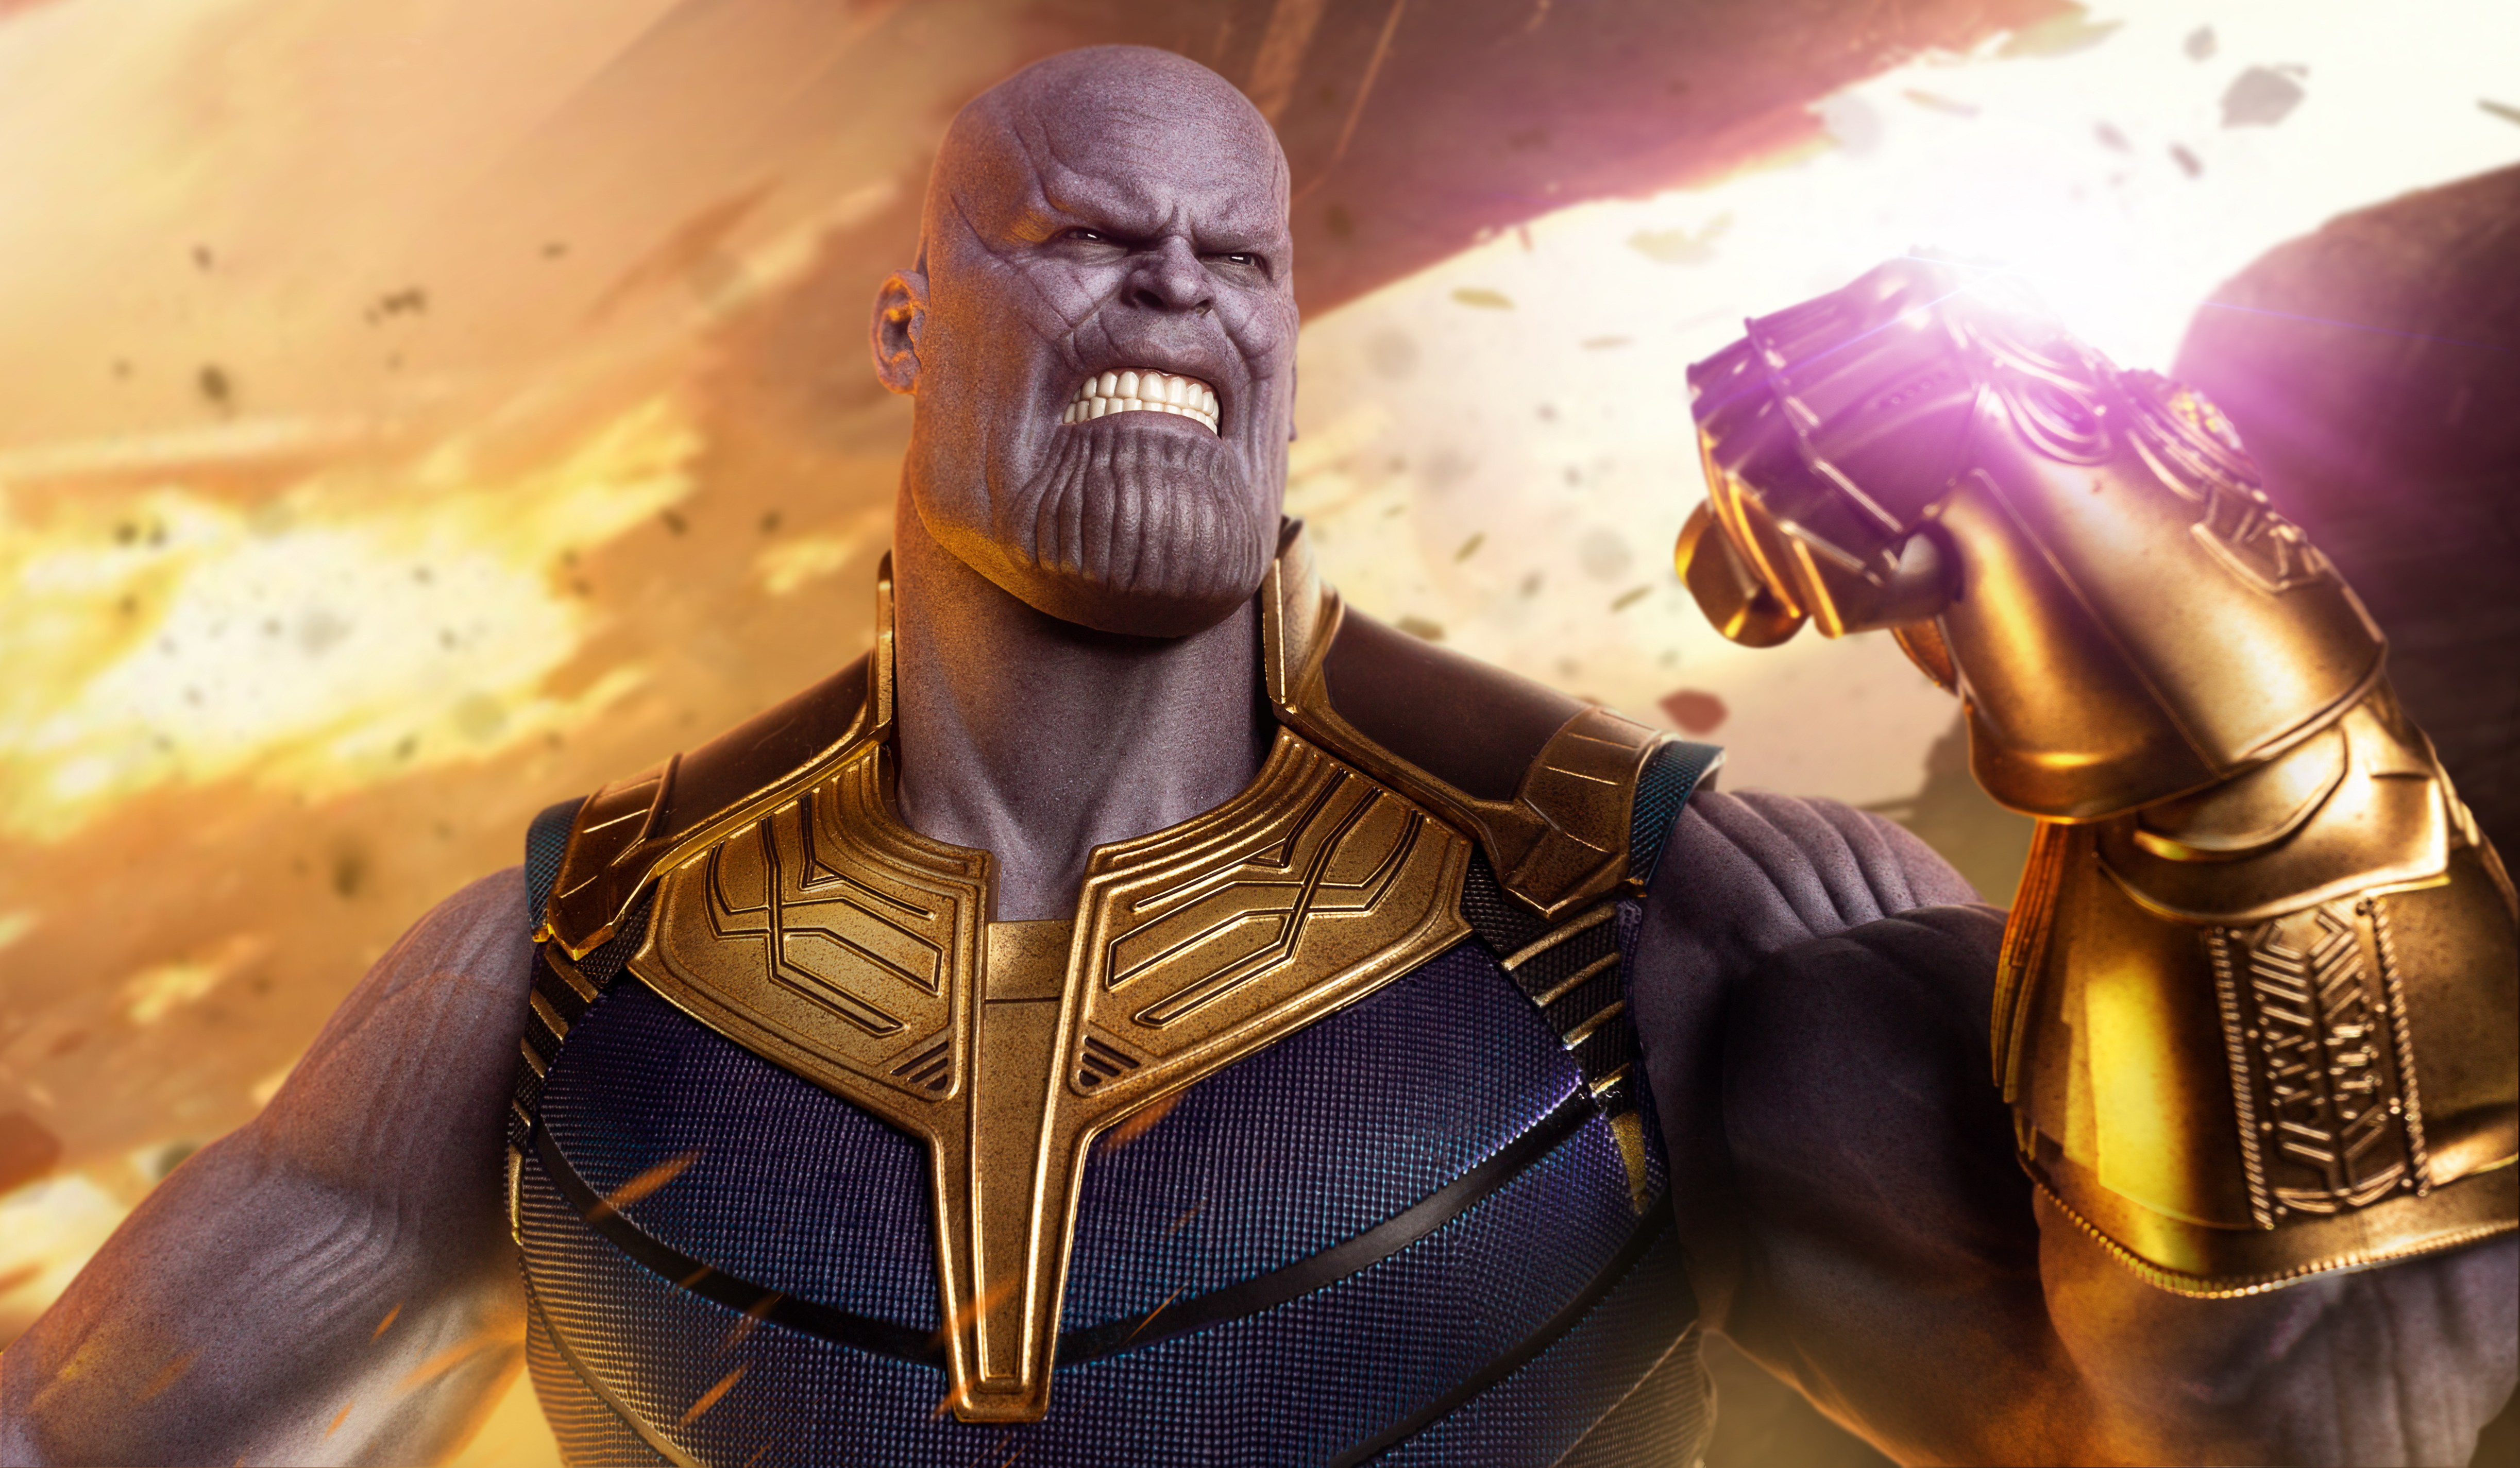 Găng tay về sự vô cực của Thanos